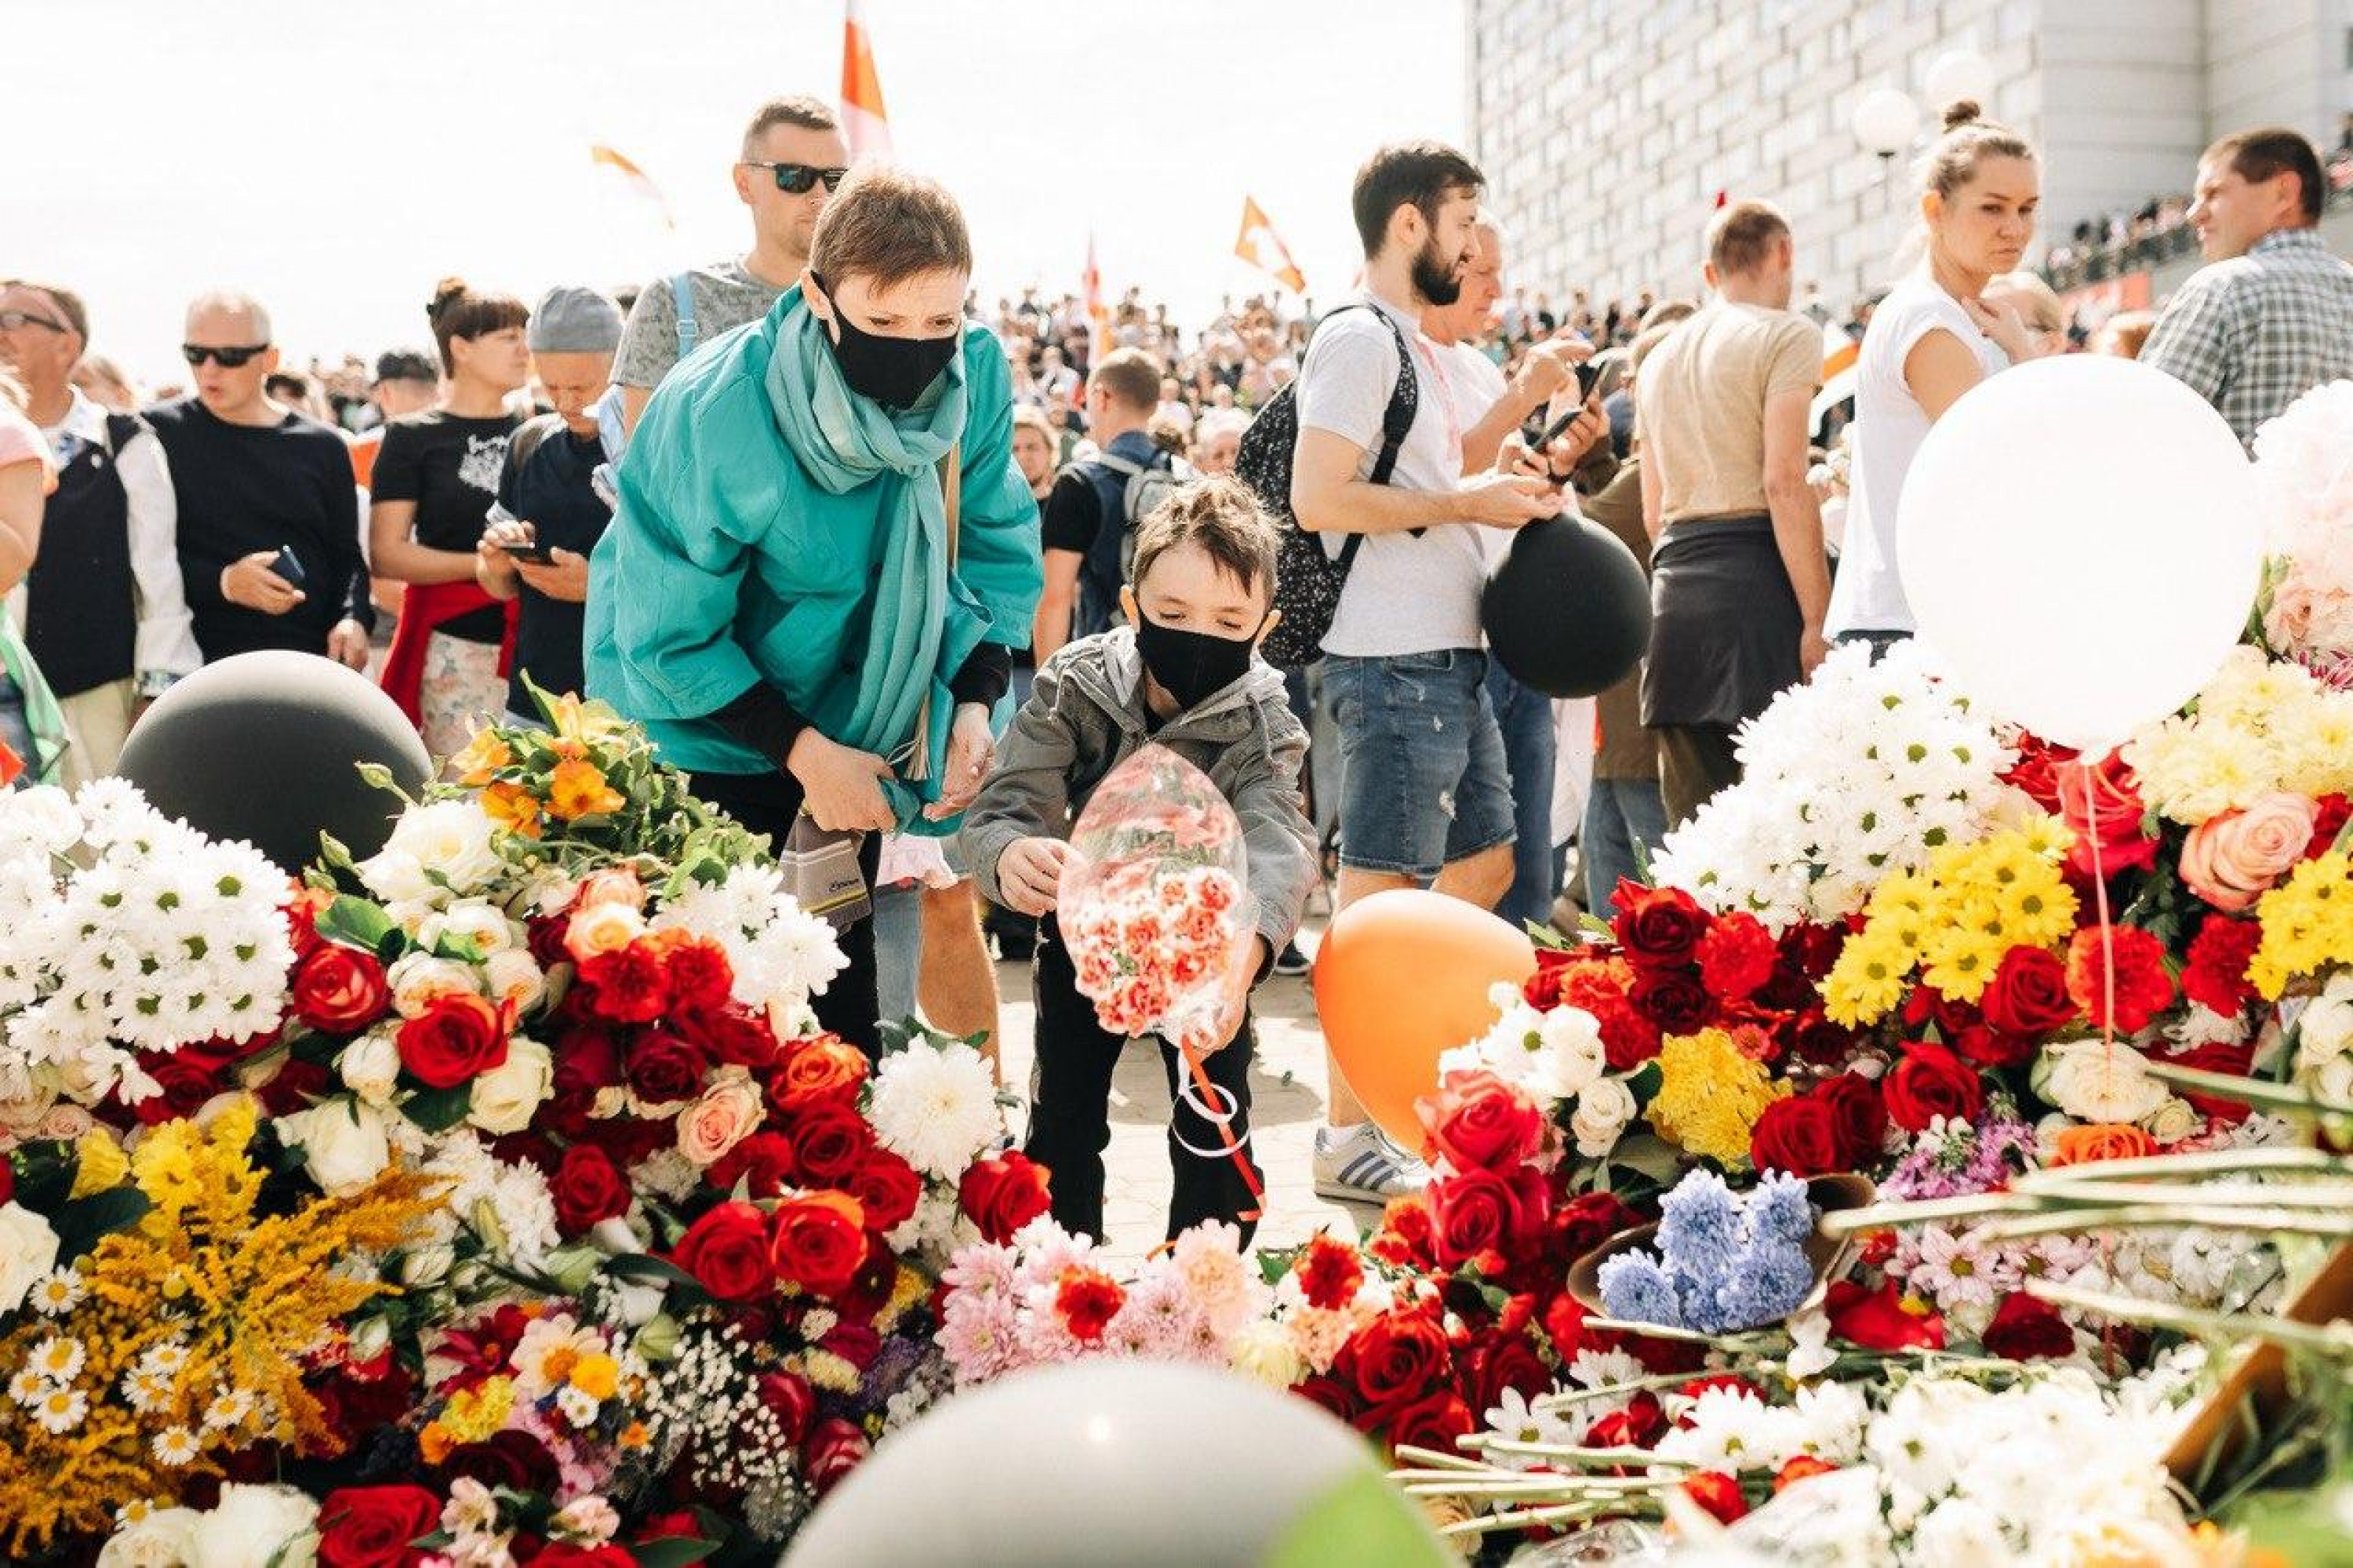 Люди возлагают цветы в память об убитом на ст. м. Пушкинская. Фото с канала "Фотографы против"